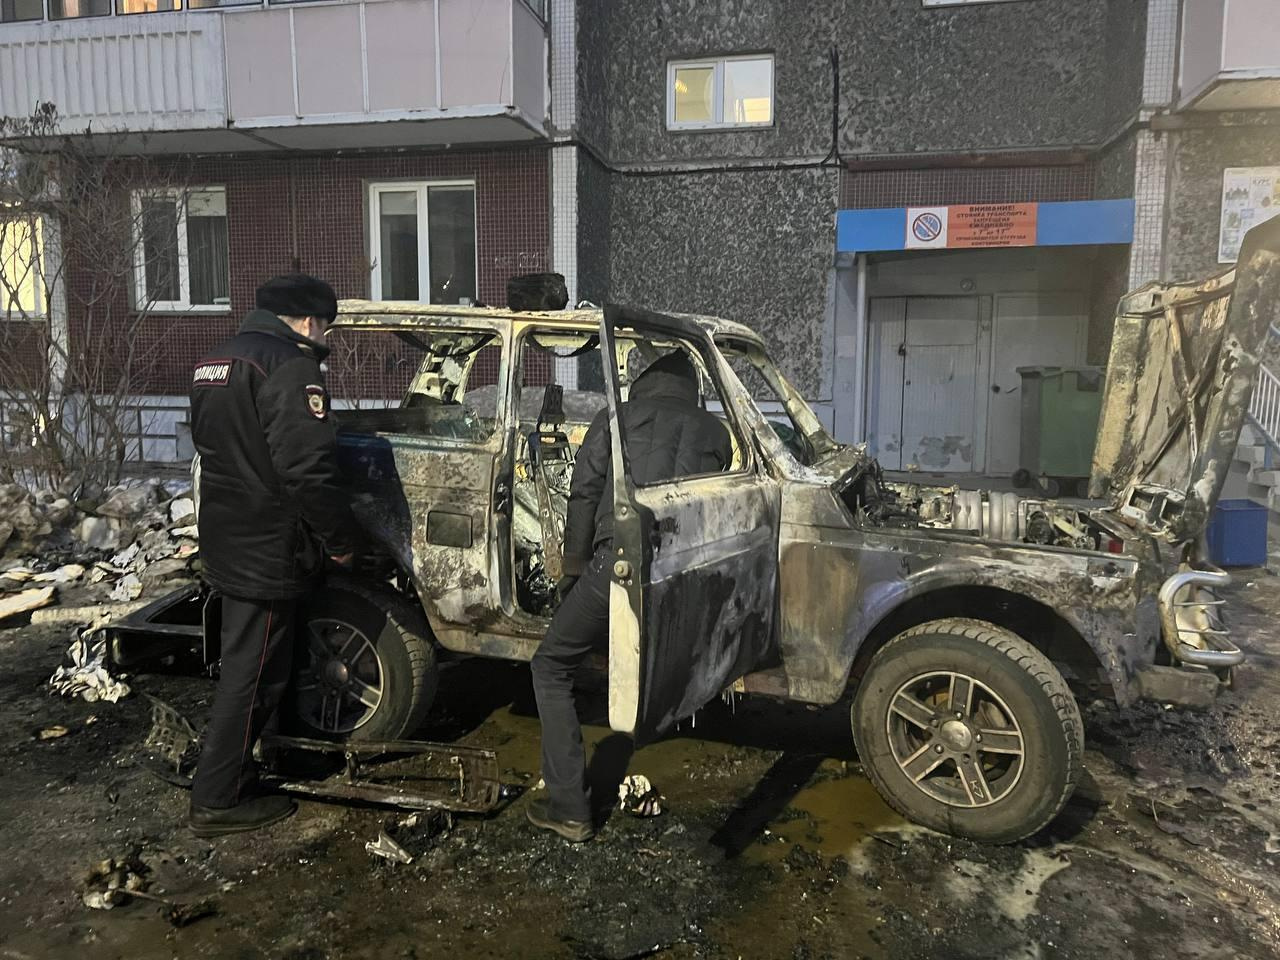 Прохожие спасли детей из загоревшейся машины в Красноярске. Мать вышла к знакомым